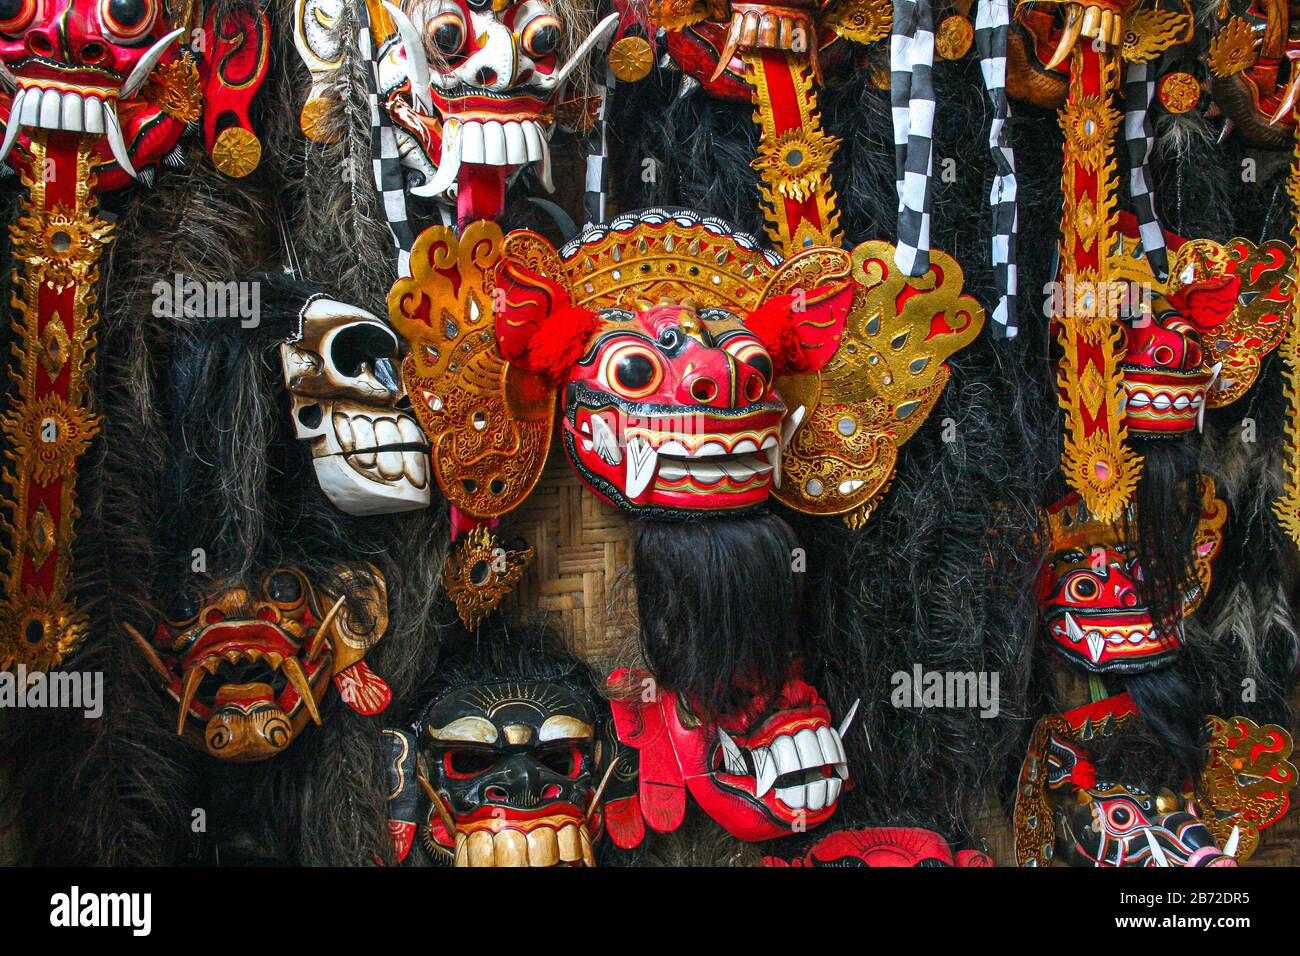 Gros plan sur les masques barong indonésiens dans une boutique de souvenirs Banque D'Images